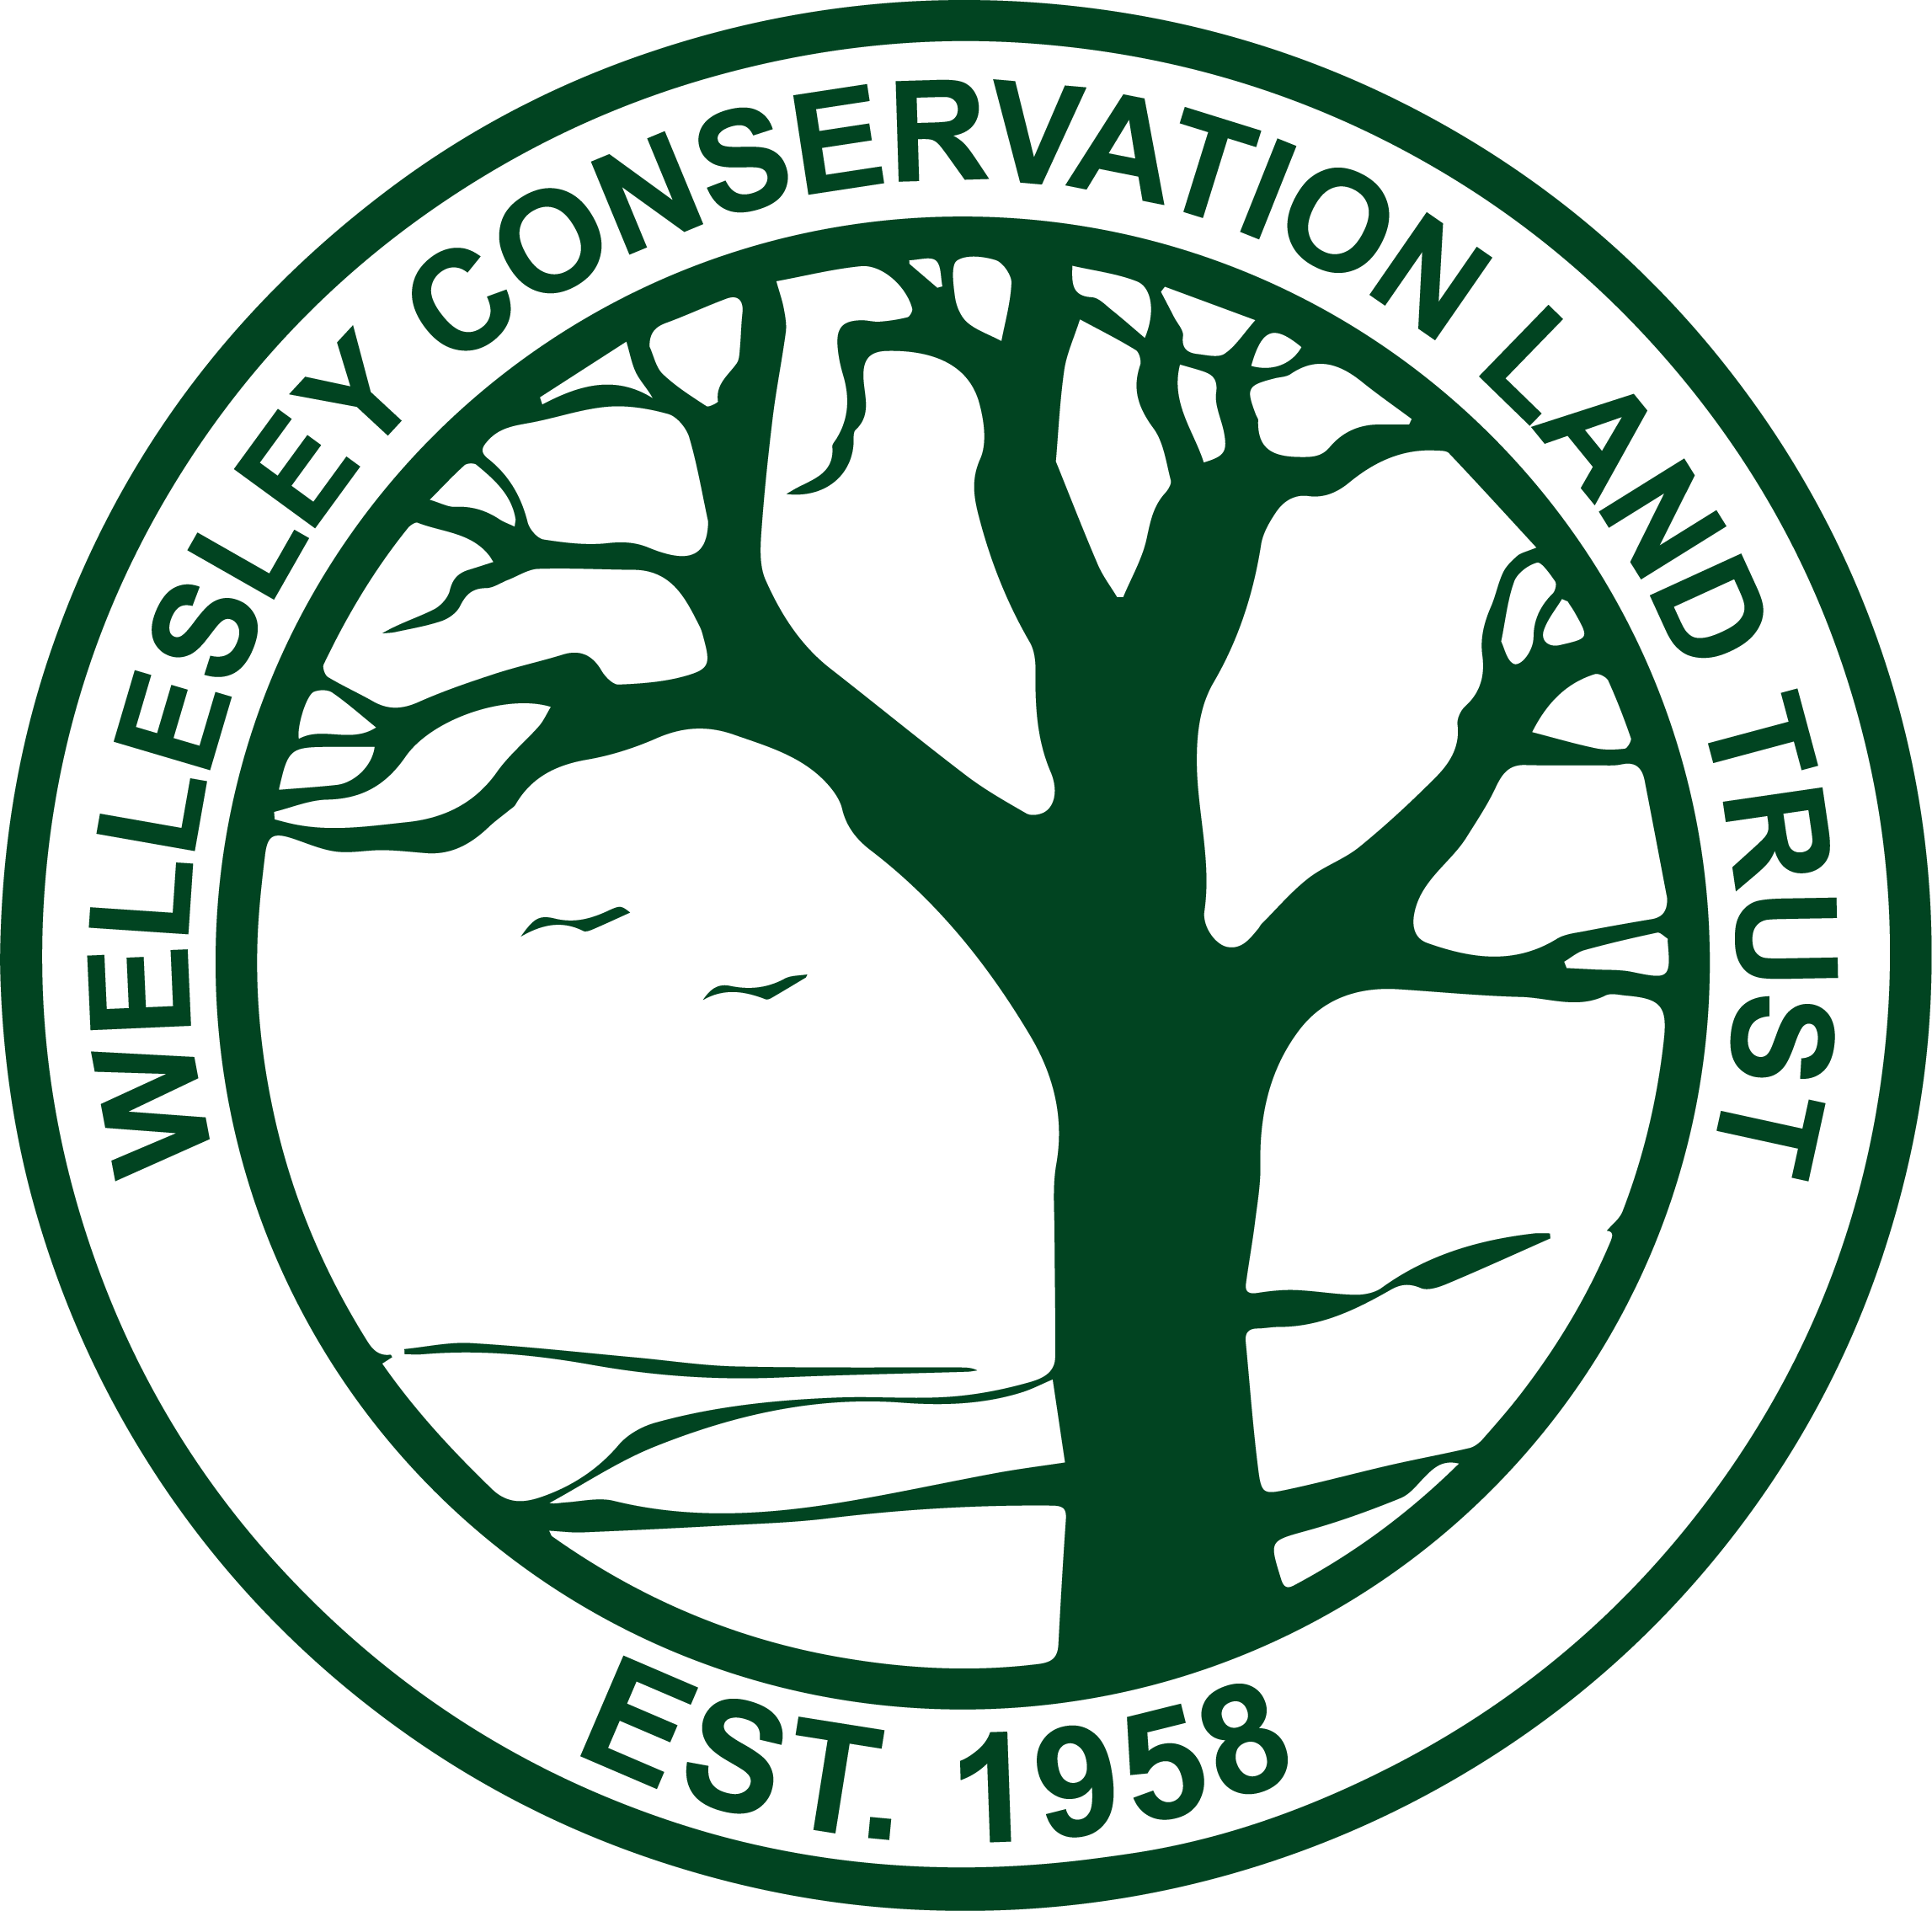 Wellesley Conservation Land Trust